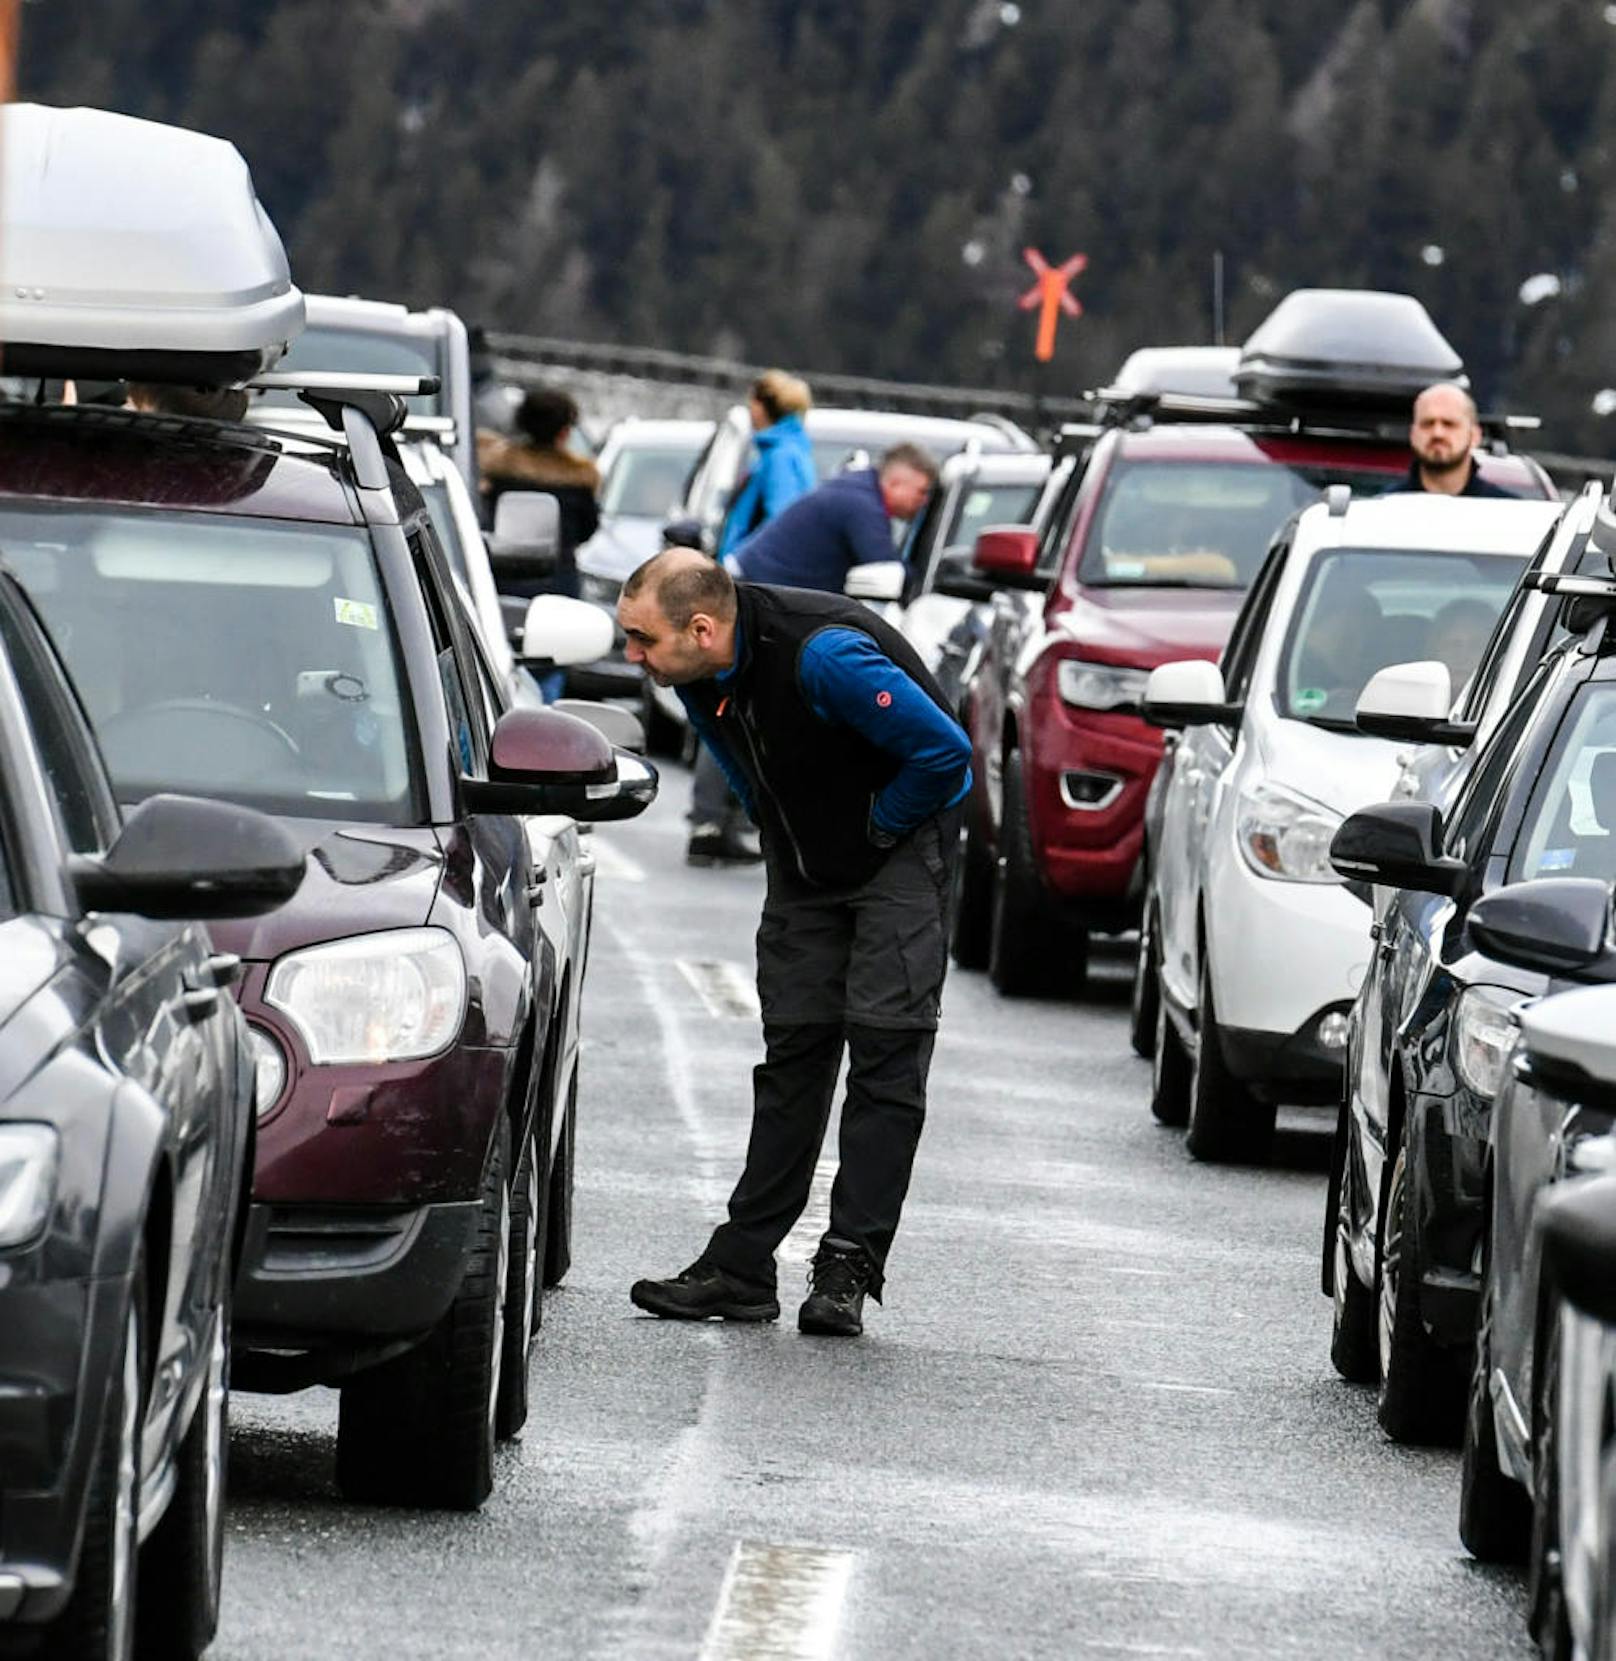 Am Samstagvormittag brach der Verkehr auf der Brennerautobahn vollkommen zusammen, die Autobahn musste komplett gesperrt werden.